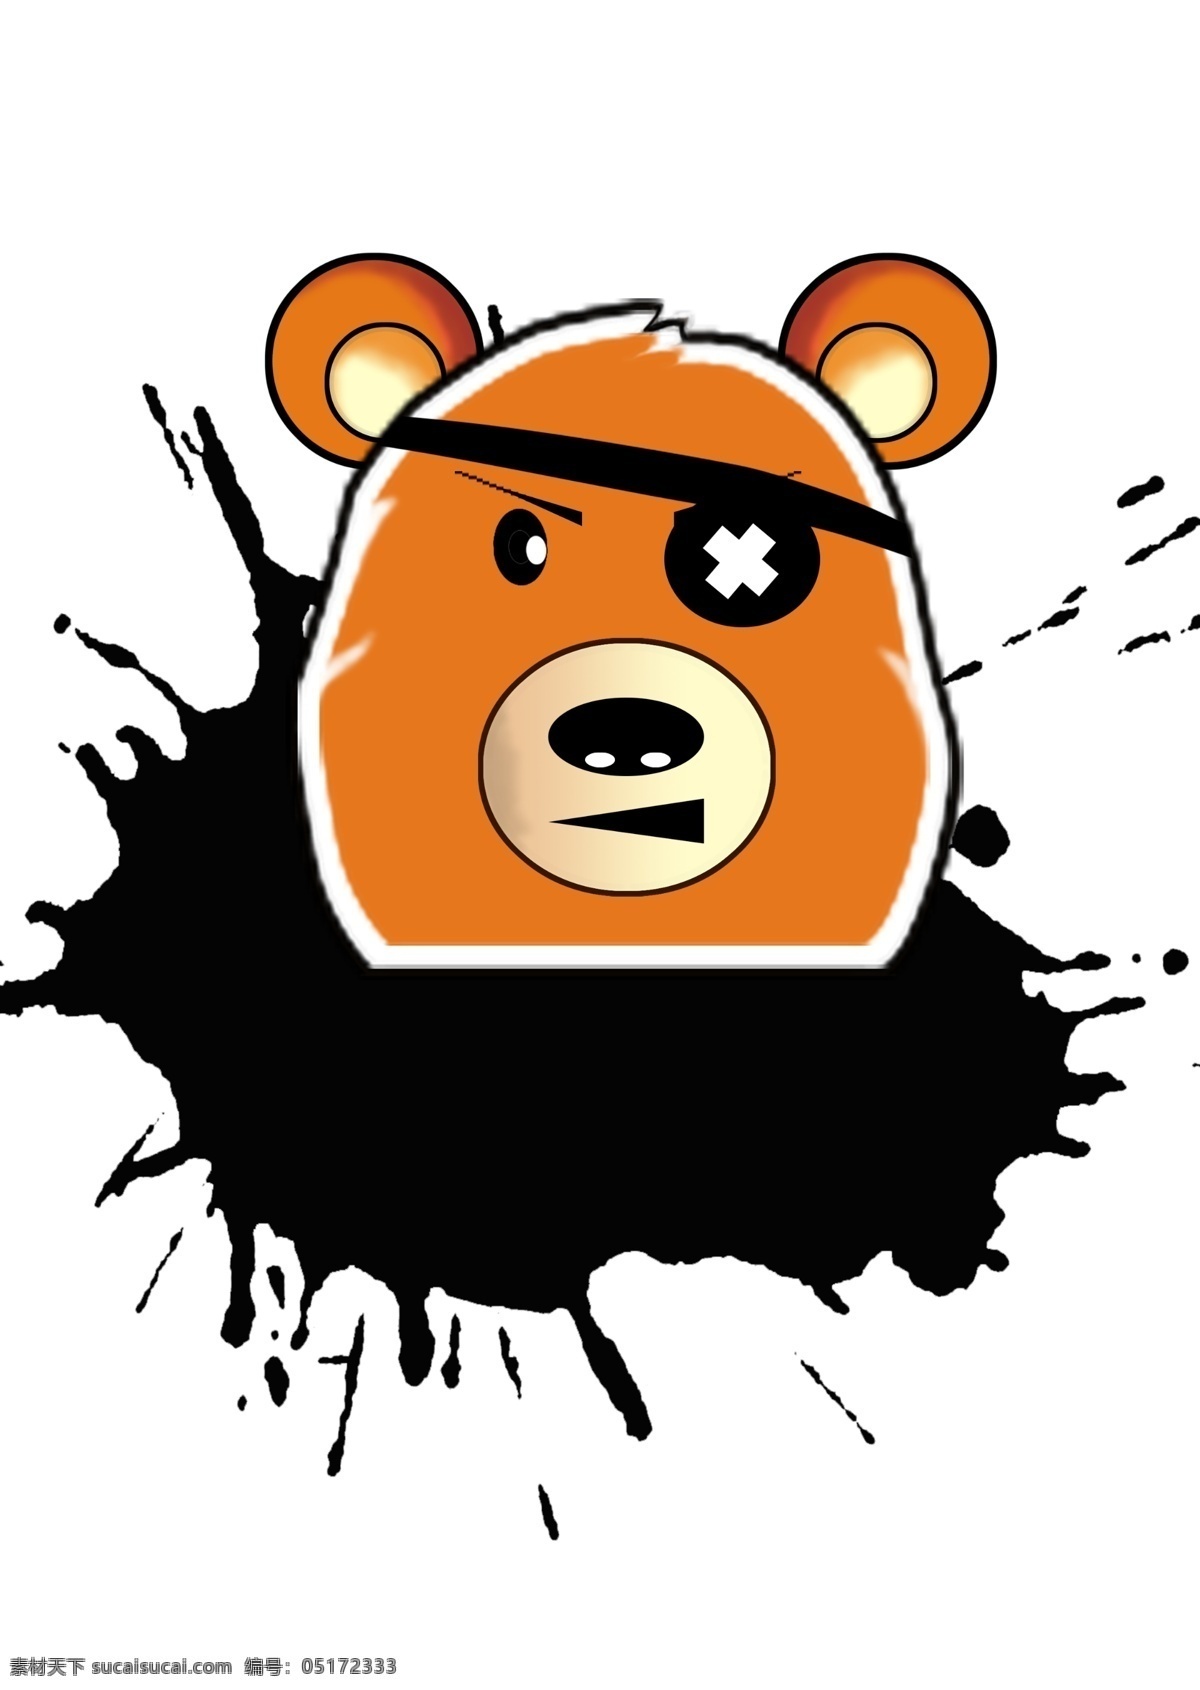 海盗 熊 头像 logo 卡通图案 海盗熊 原创设计 其他原创设计